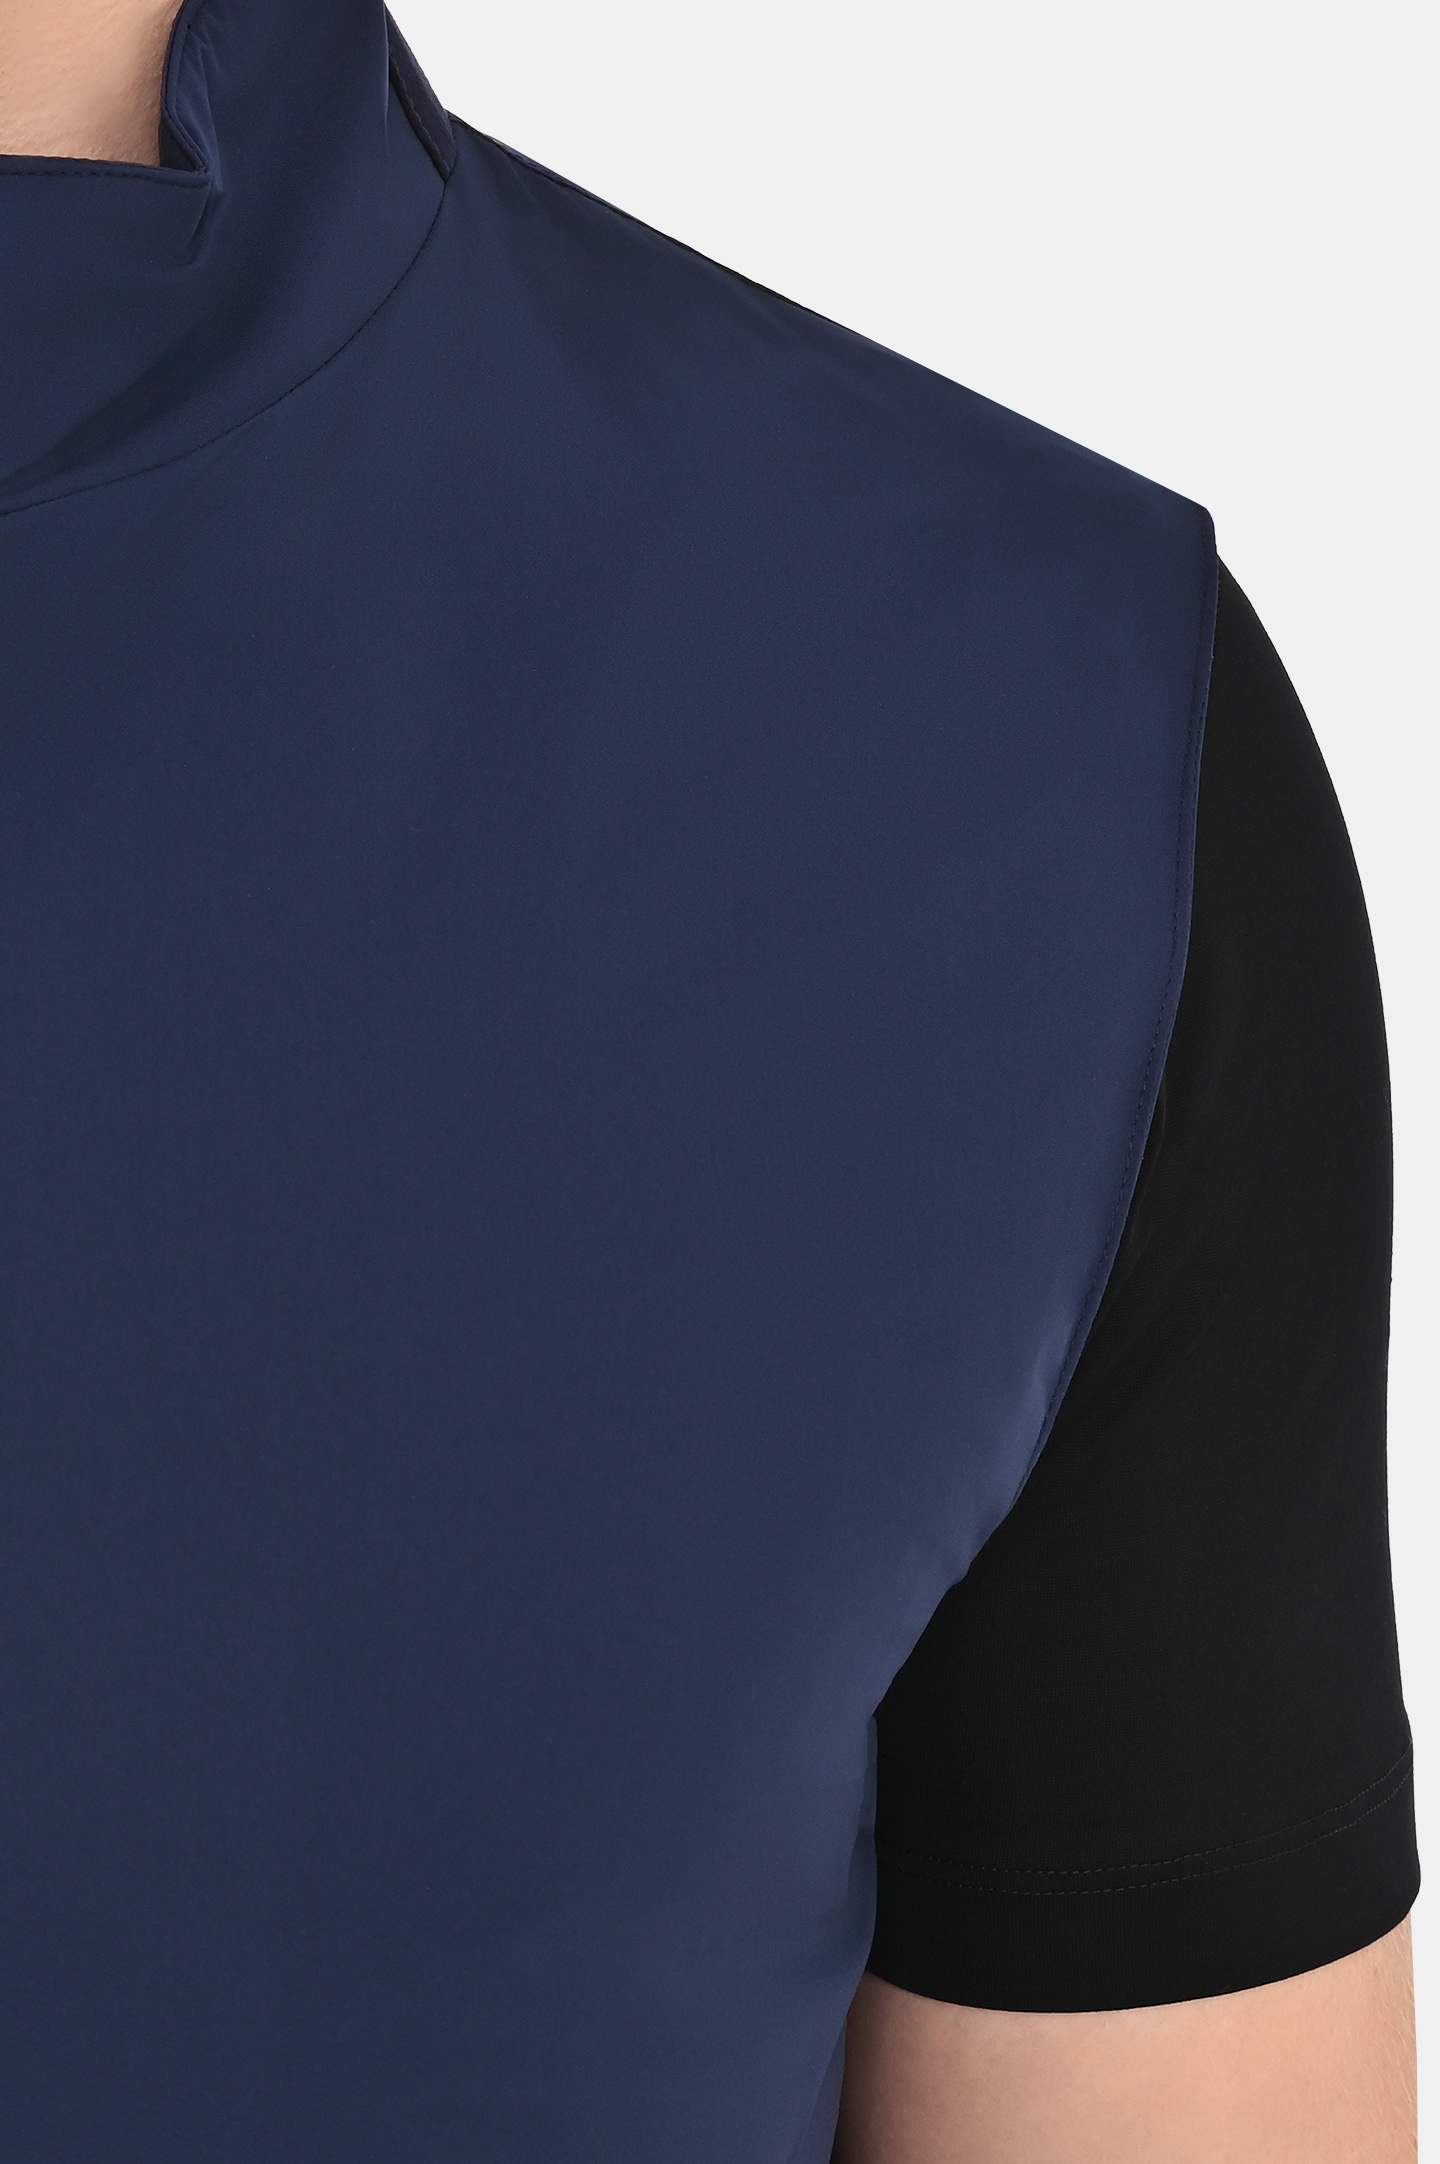 Жилет легкий с карманами  CASTANGIA ES10, цвет: Темно-синий, Мужской